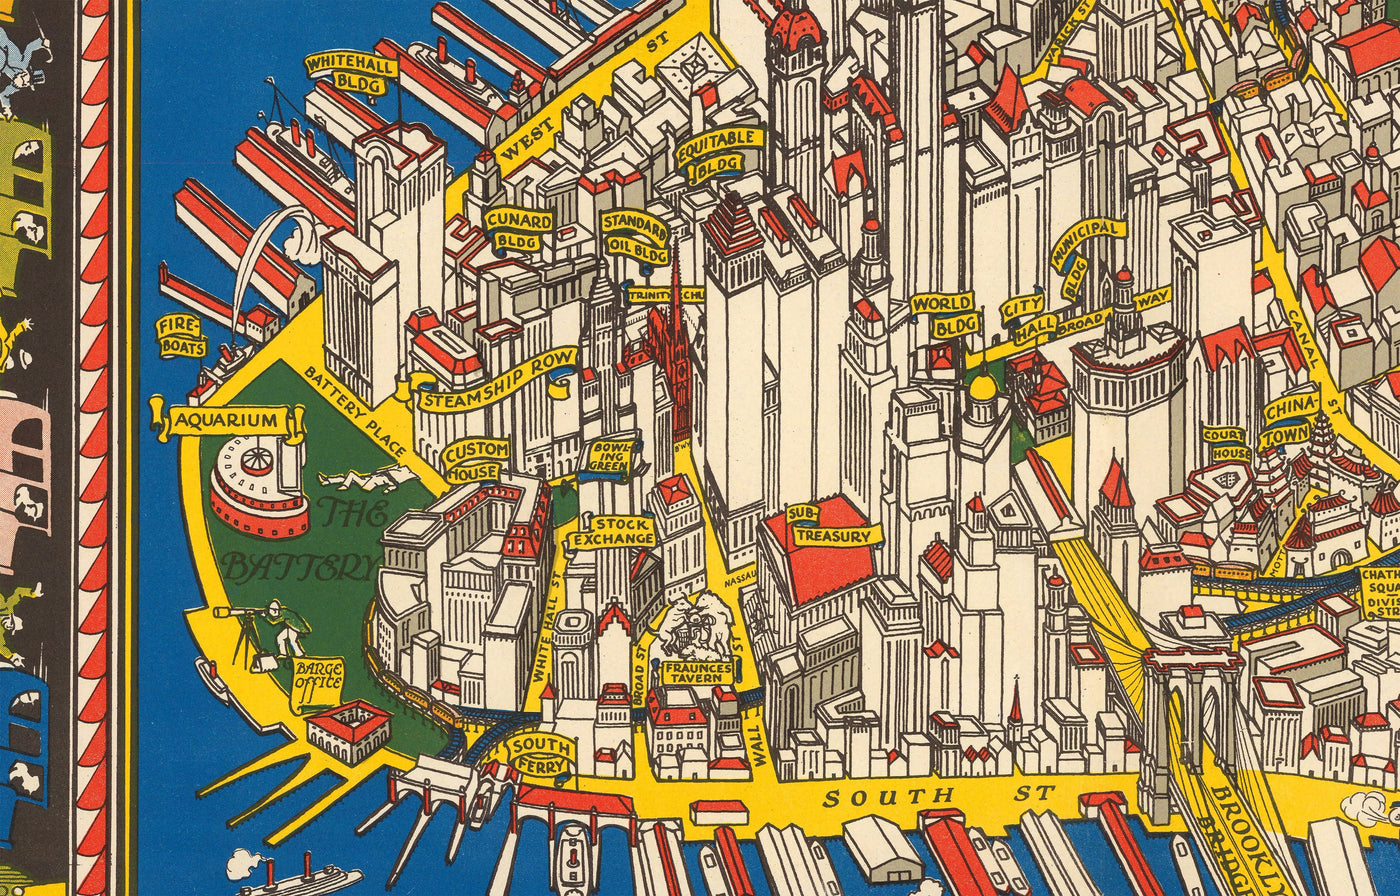 Viejo mapa pictórico de Manhattan, Ciudad de Nueva York, 1928 por Farrow - Washington Heights, Puentes